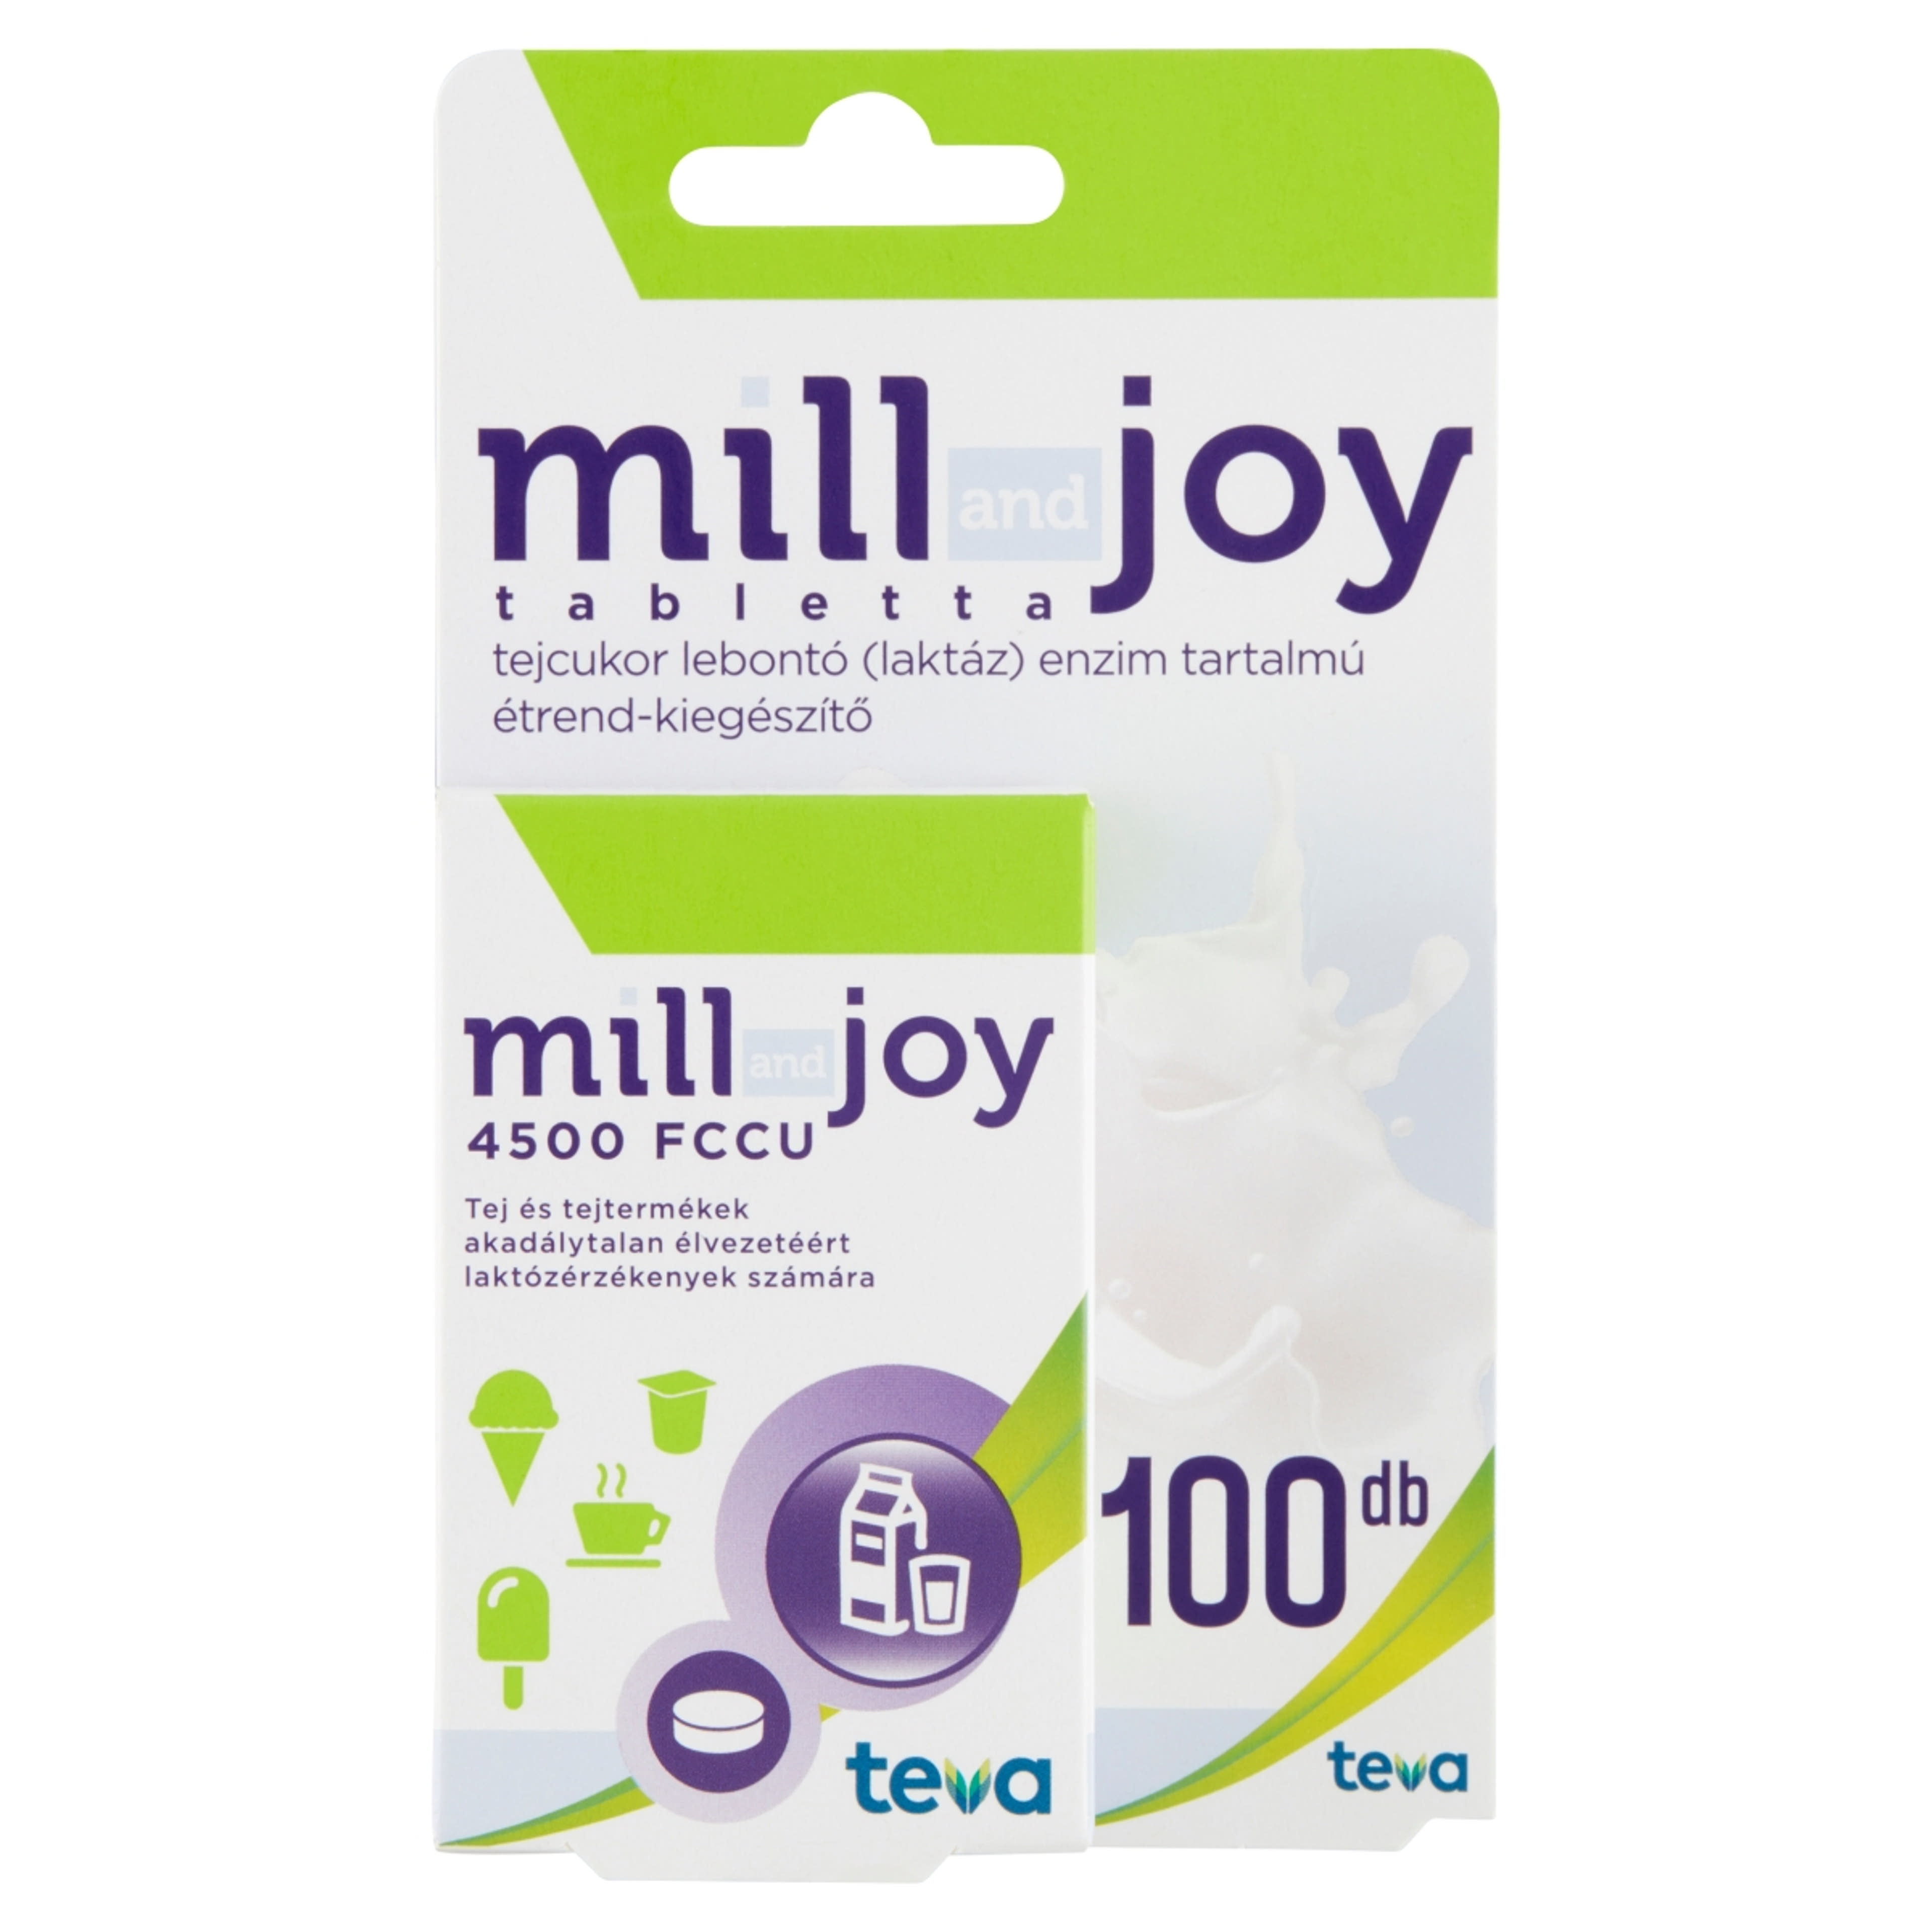 Millandjoy laktázenzim tabletta - 100 db-1